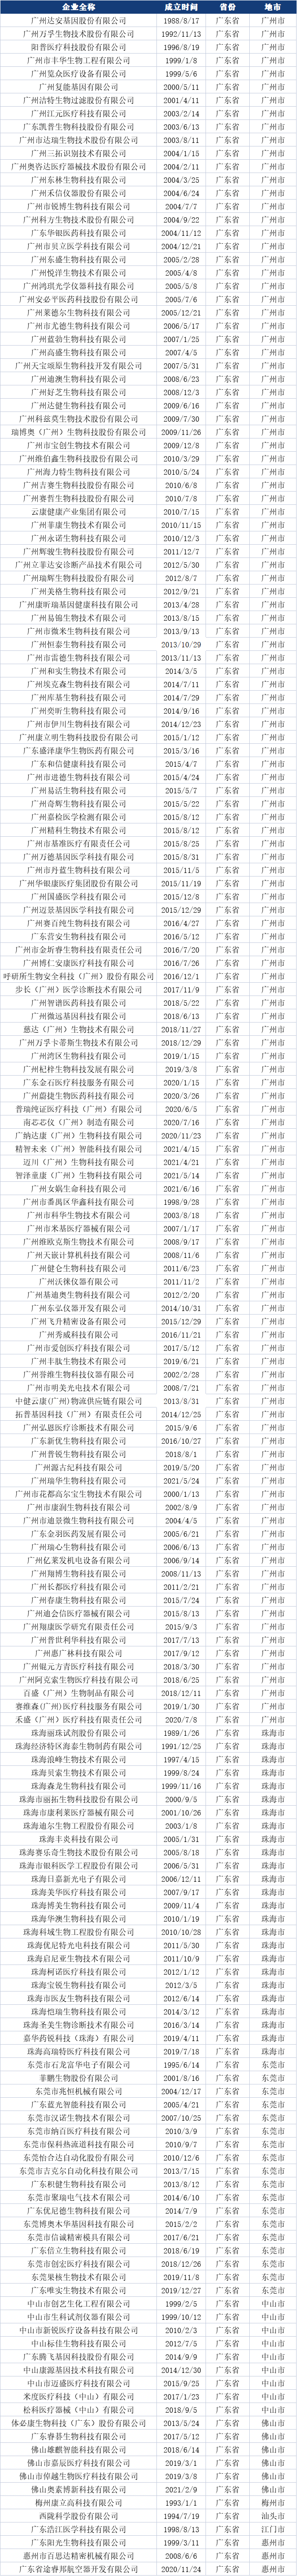 广东 404家IVD生产企业名录